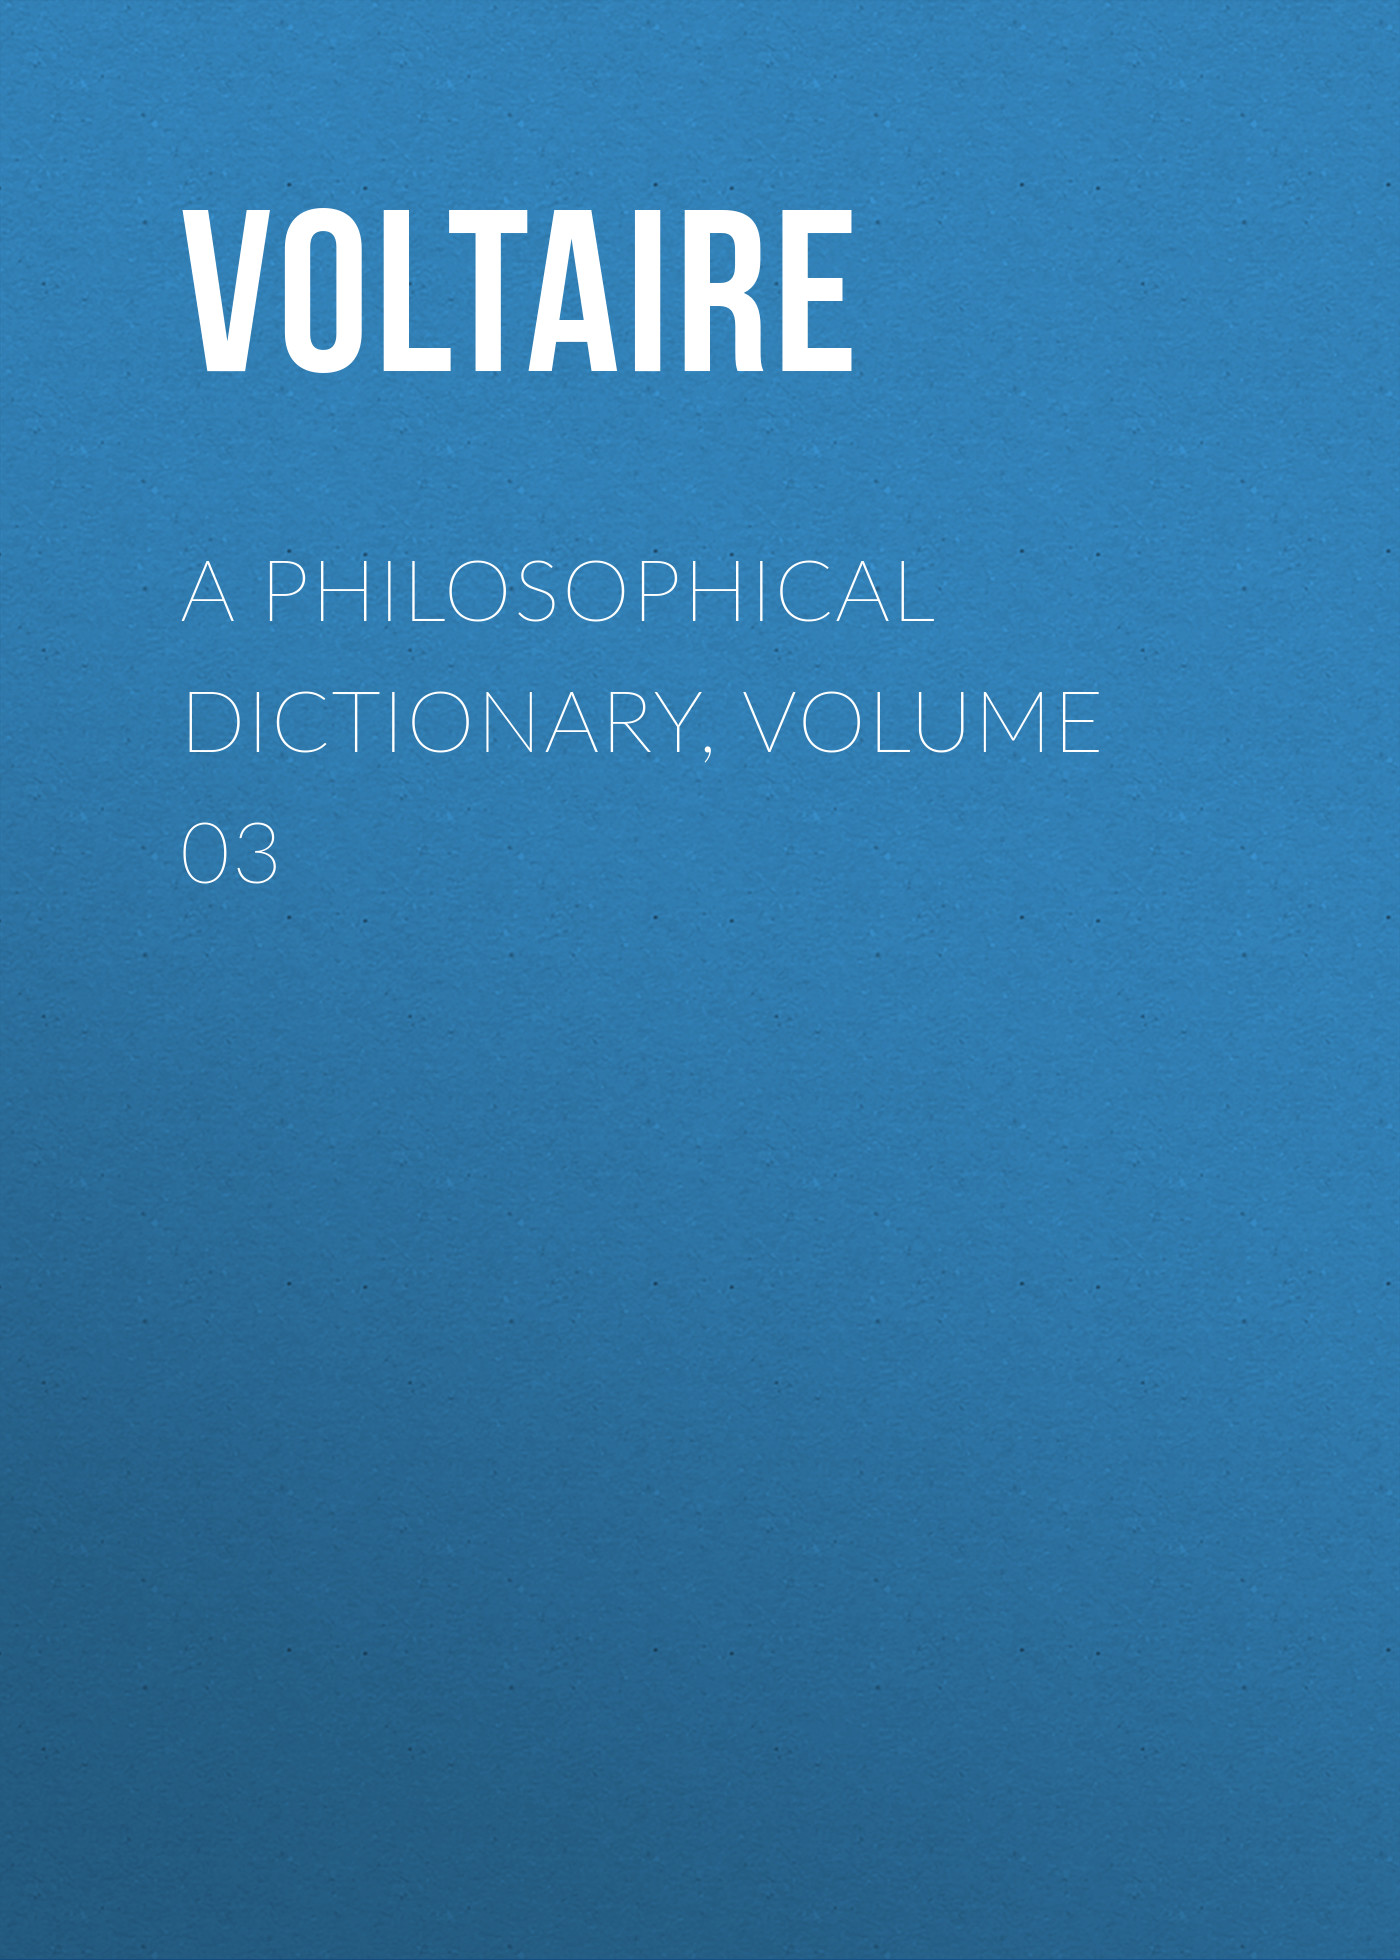 Книга A Philosophical Dictionary, Volume 03 из серии , созданная  Voltaire, может относится к жанру Философия, Литература 18 века, Зарубежная классика. Стоимость электронной книги A Philosophical Dictionary, Volume 03 с идентификатором 25560828 составляет 0 руб.